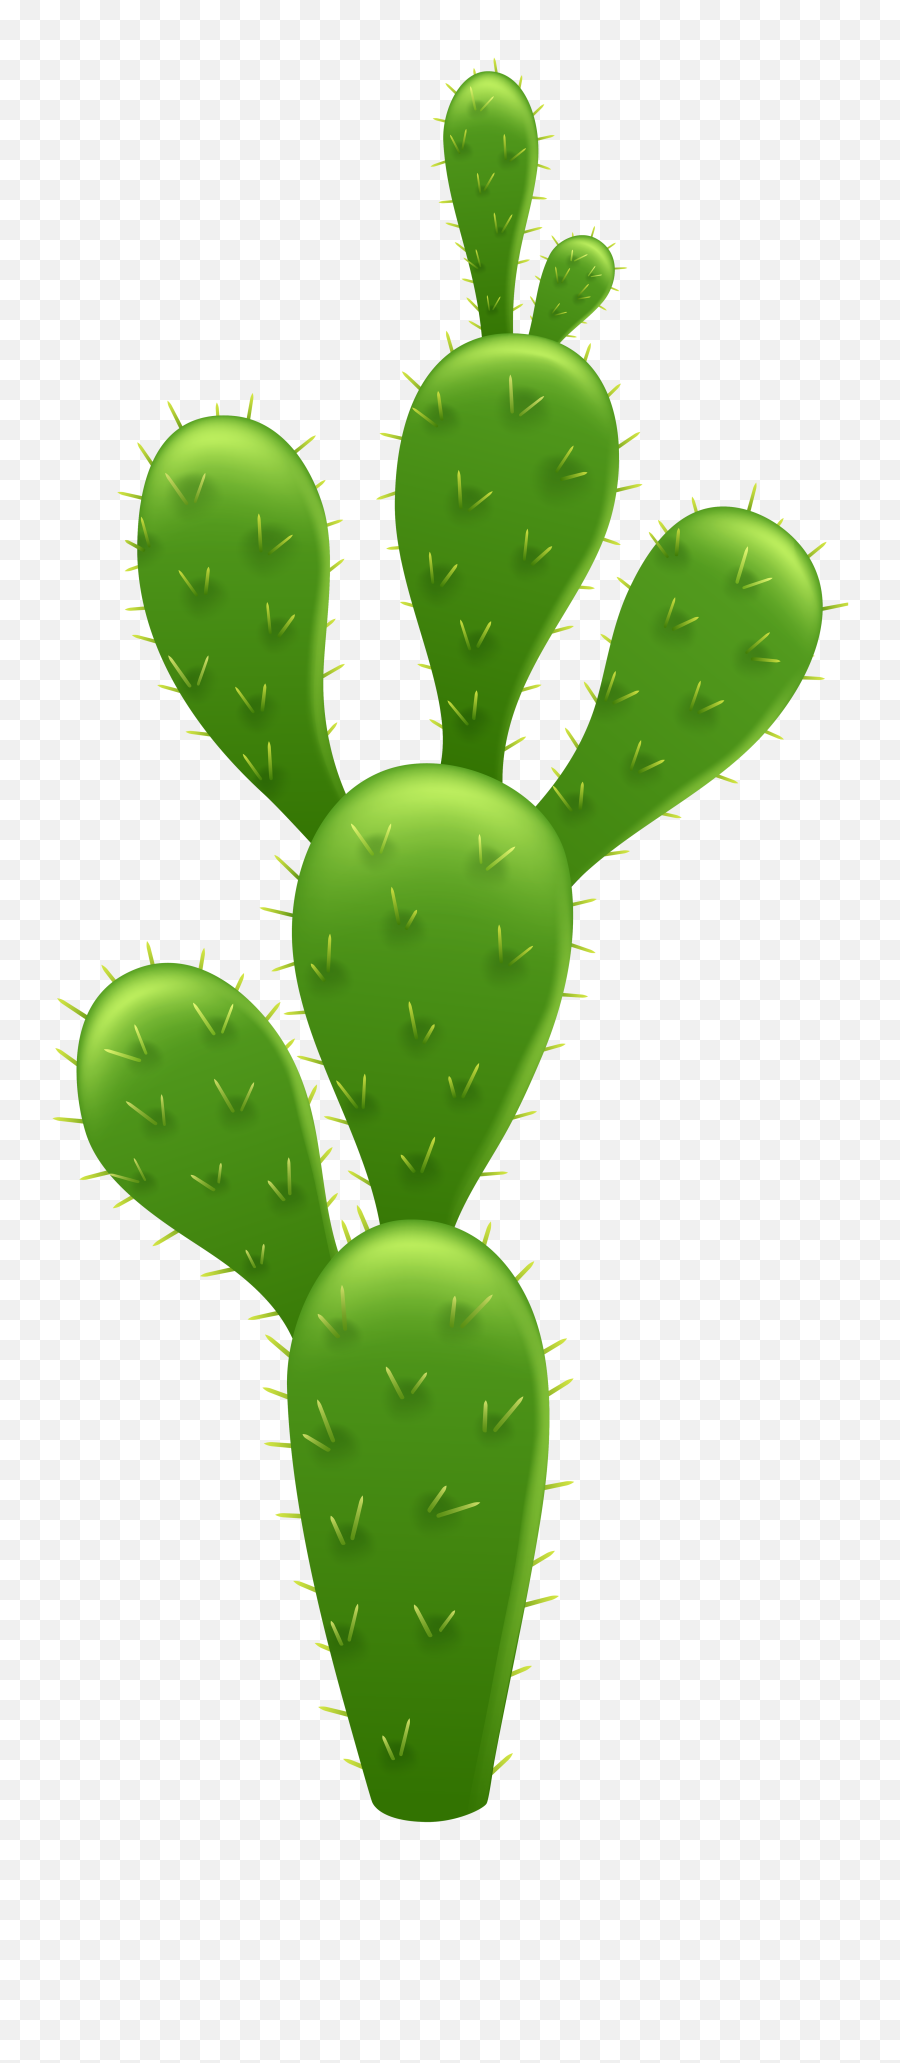 Cactus Clipart - Transparent Background Cactus Clipart Png,Cactus Clipart Png